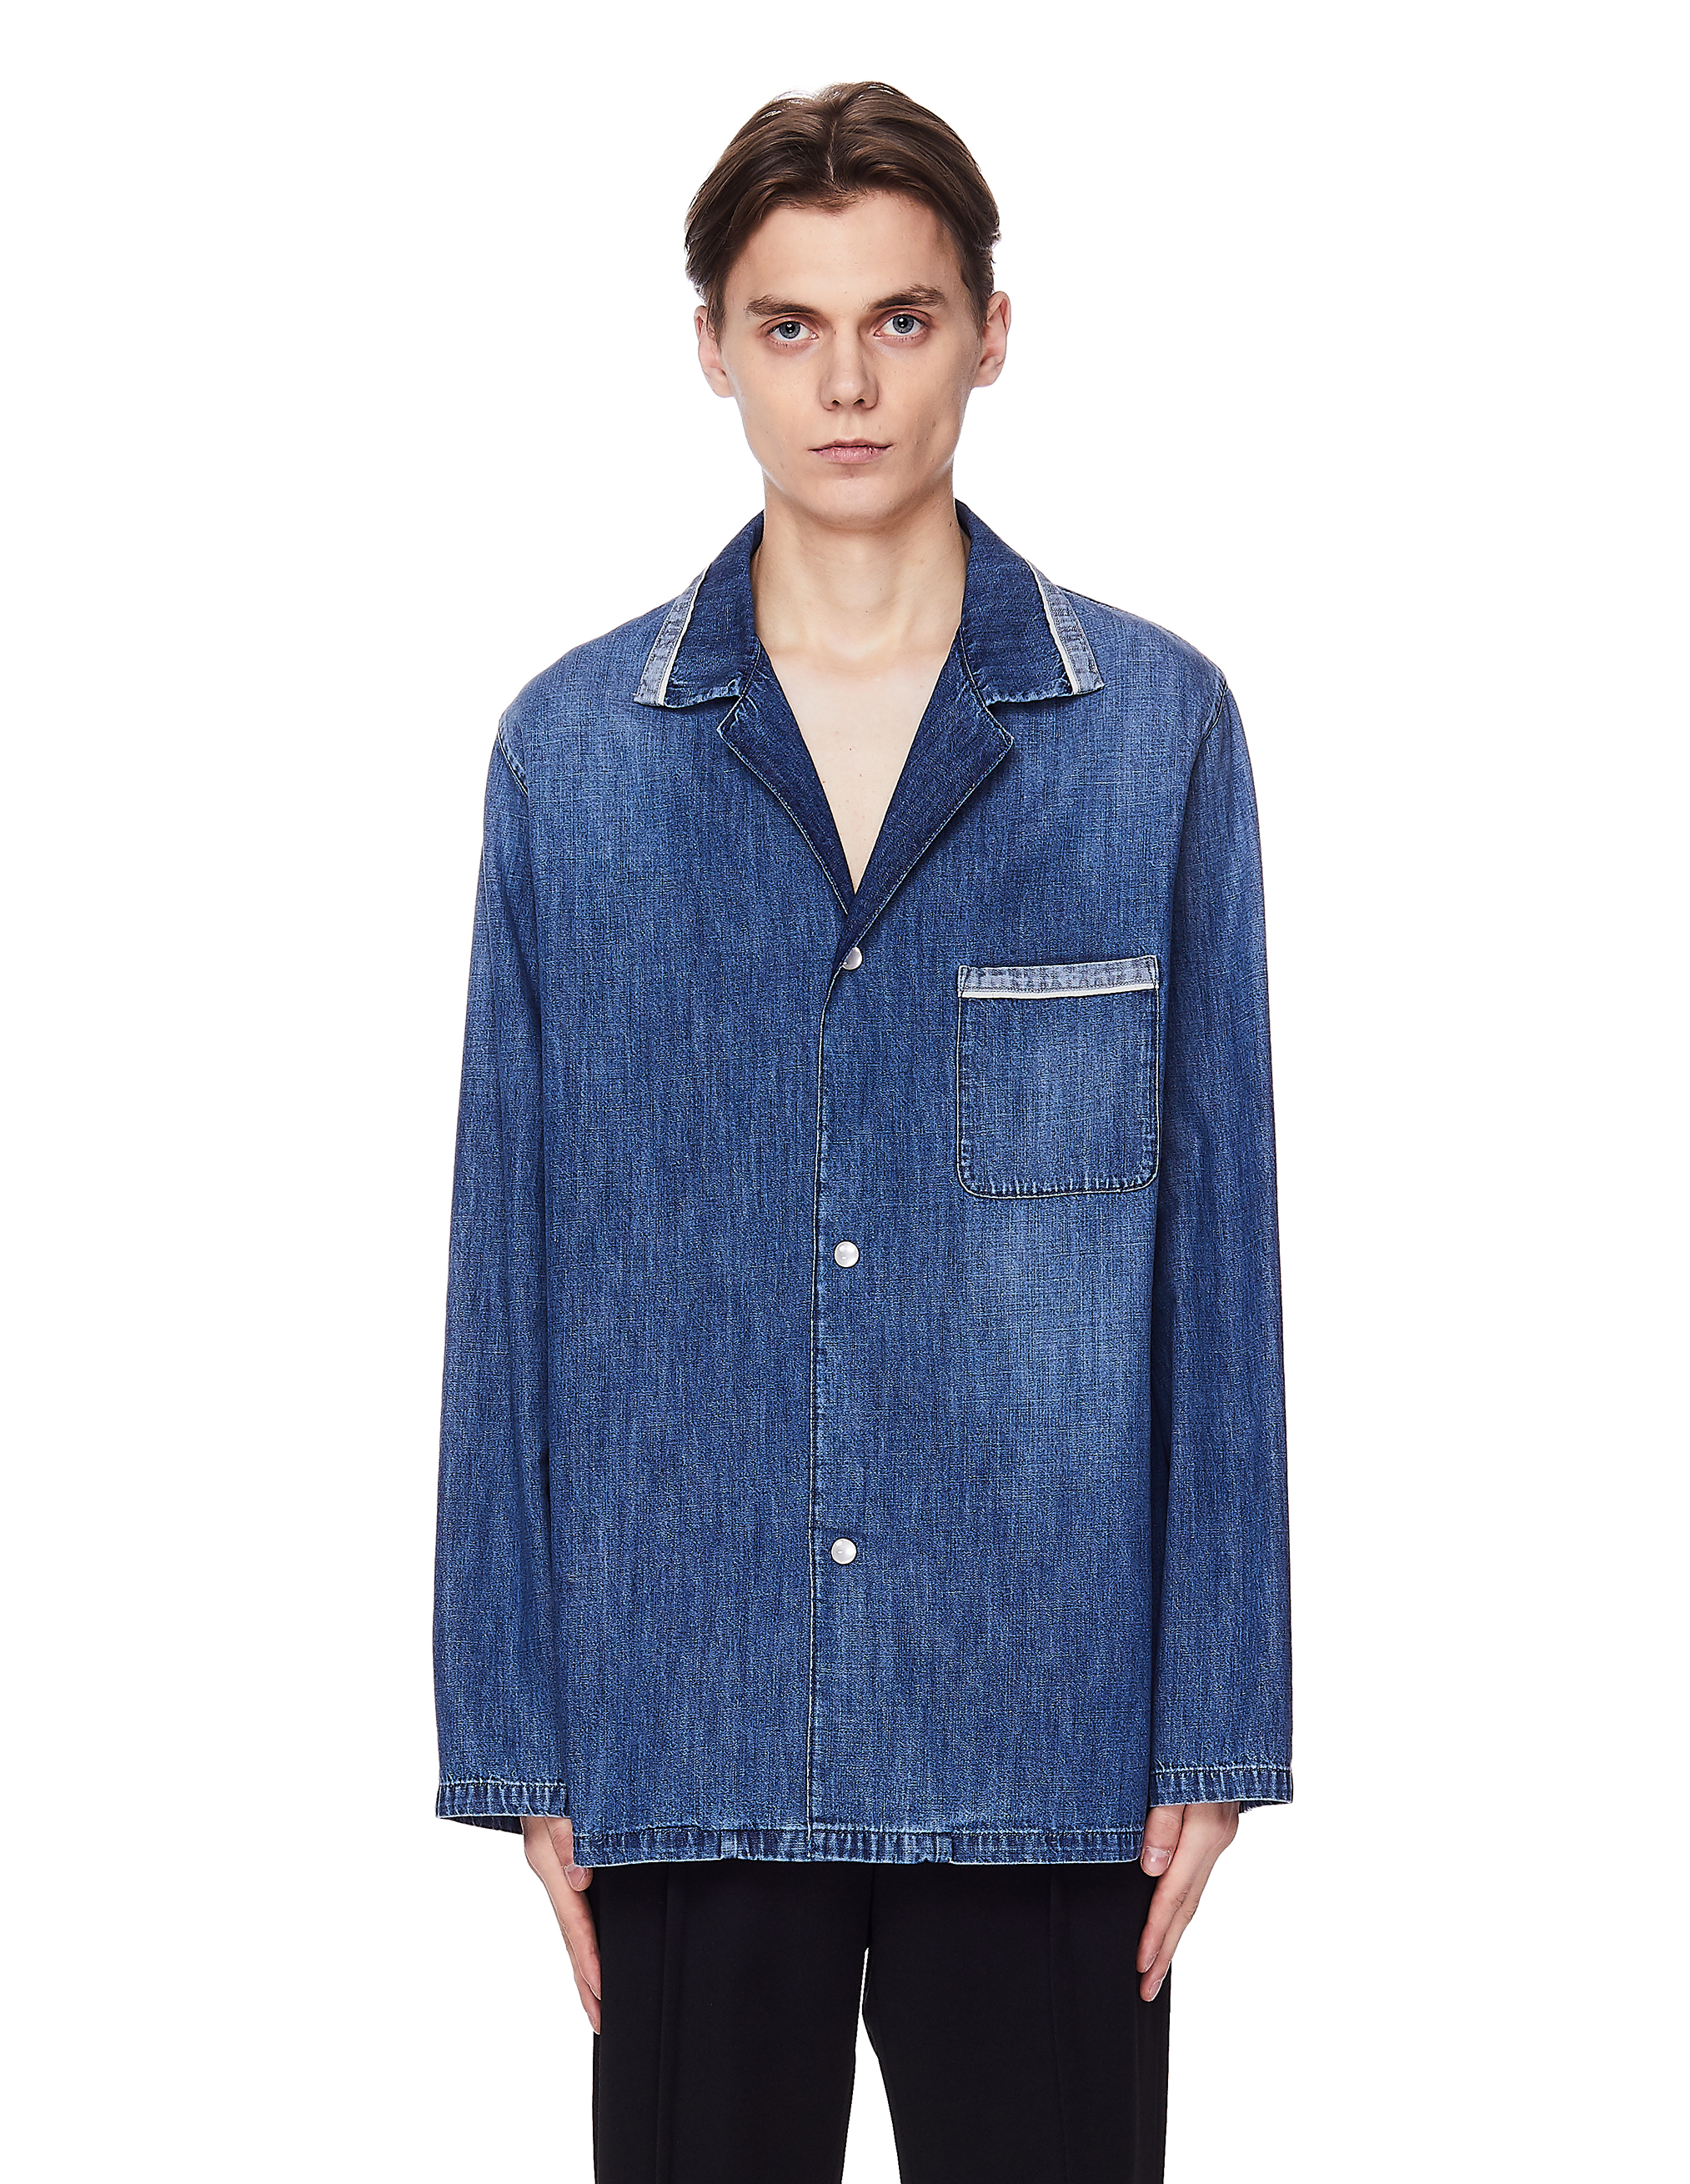 Голубая рубашка из тонкого денима - Maison Margiela S50AM0452/S30514/468